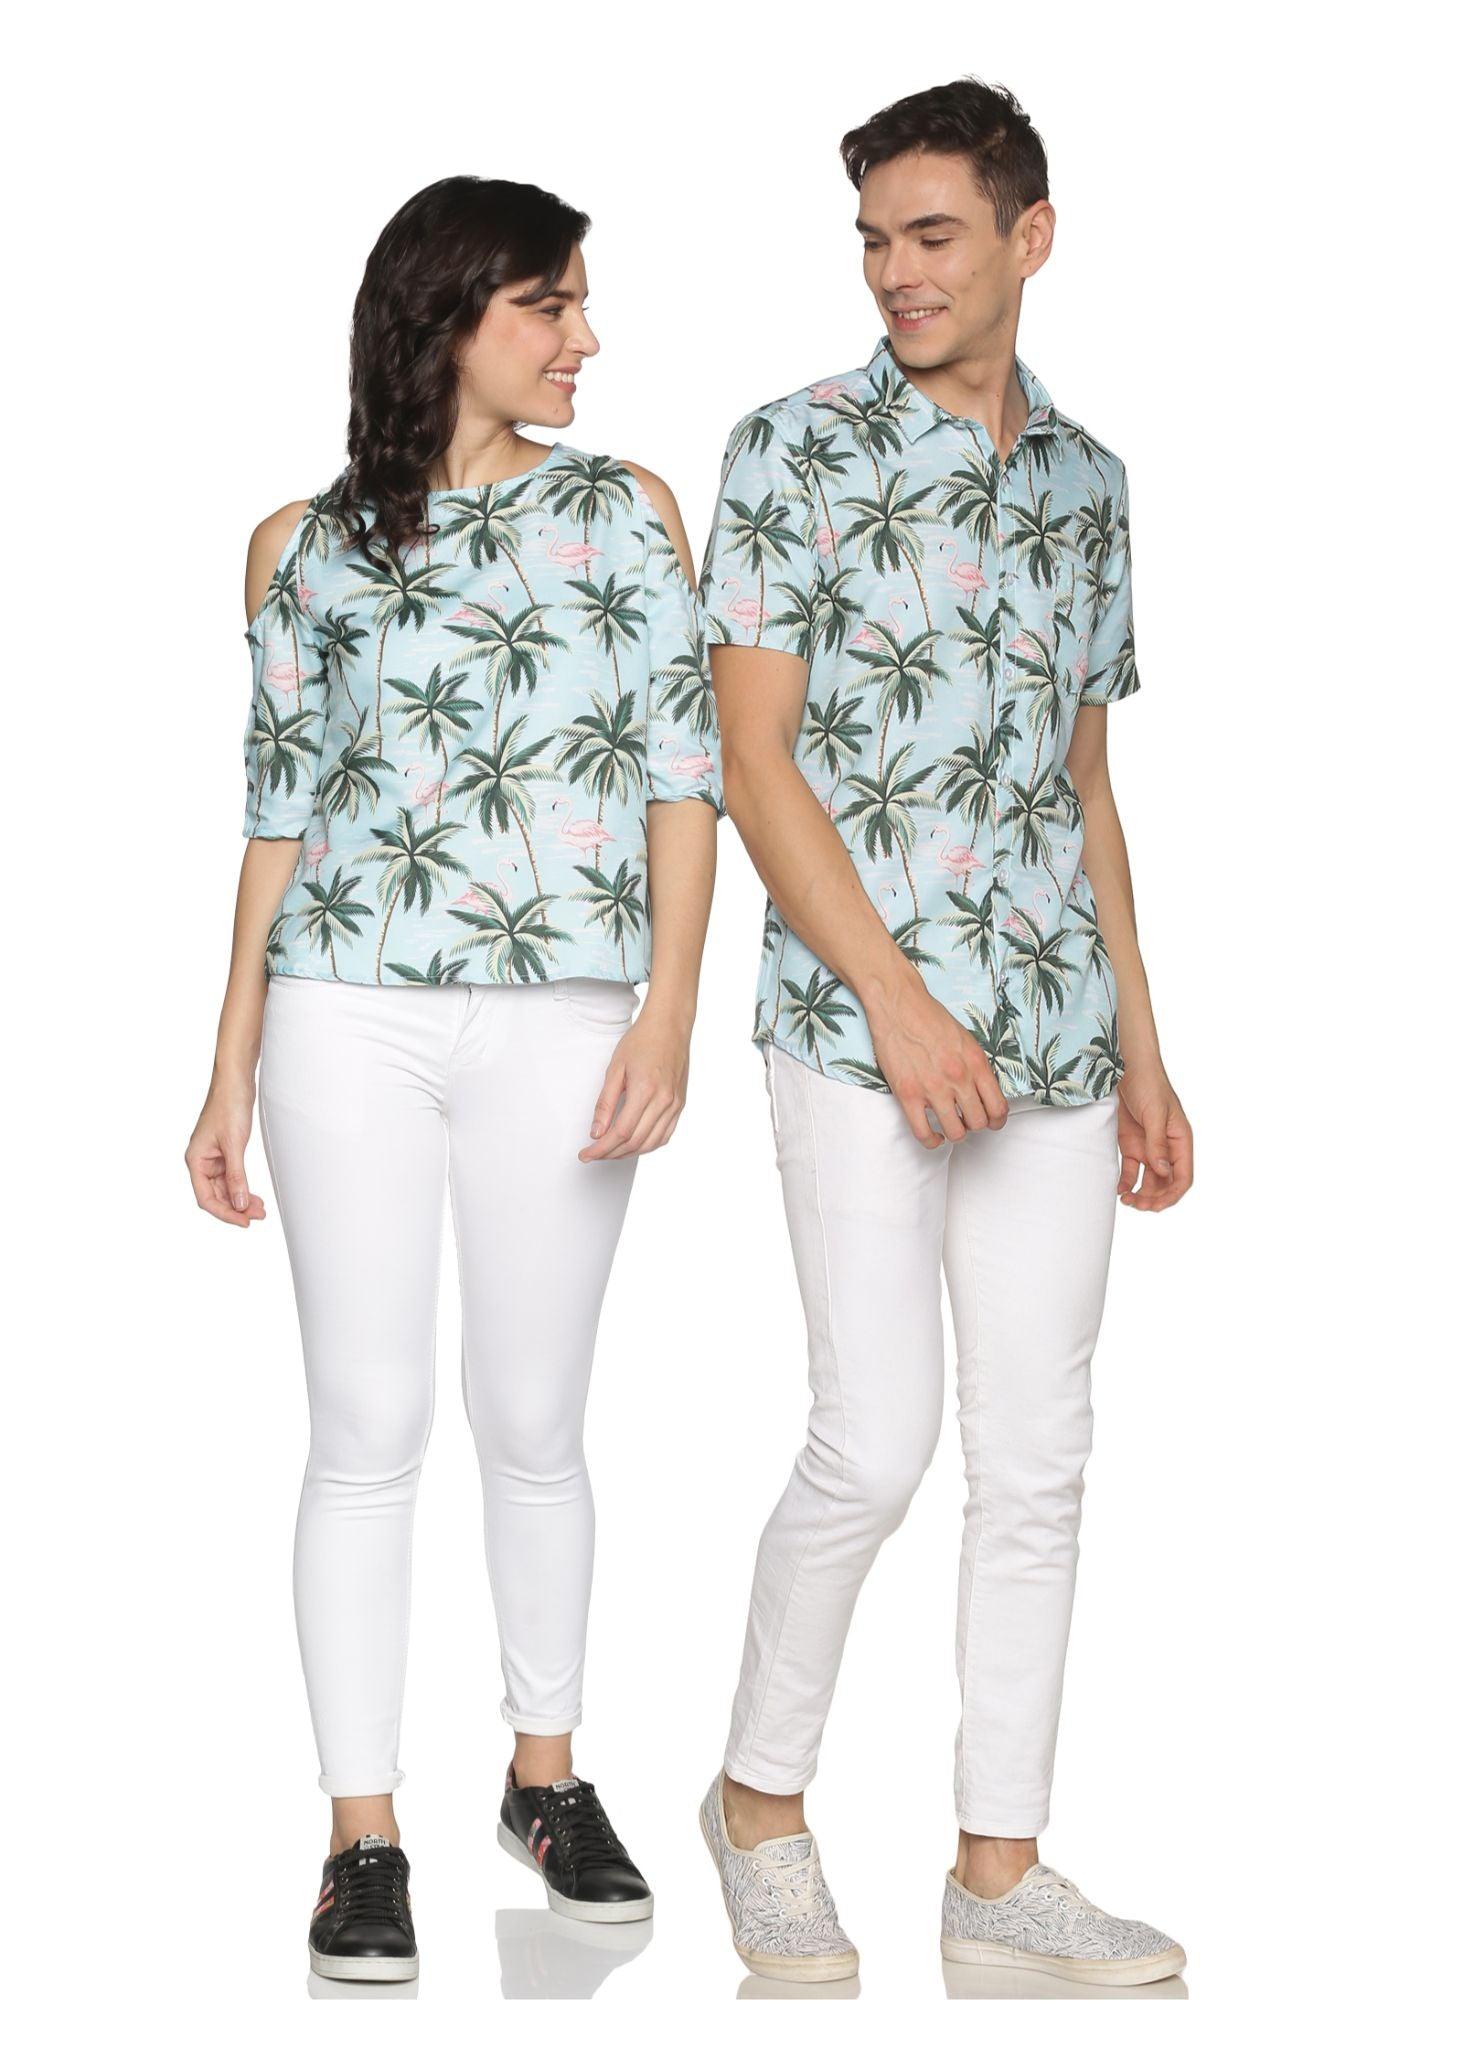 Tusok Shirt Top Combo Twinning Couple Matching Dress